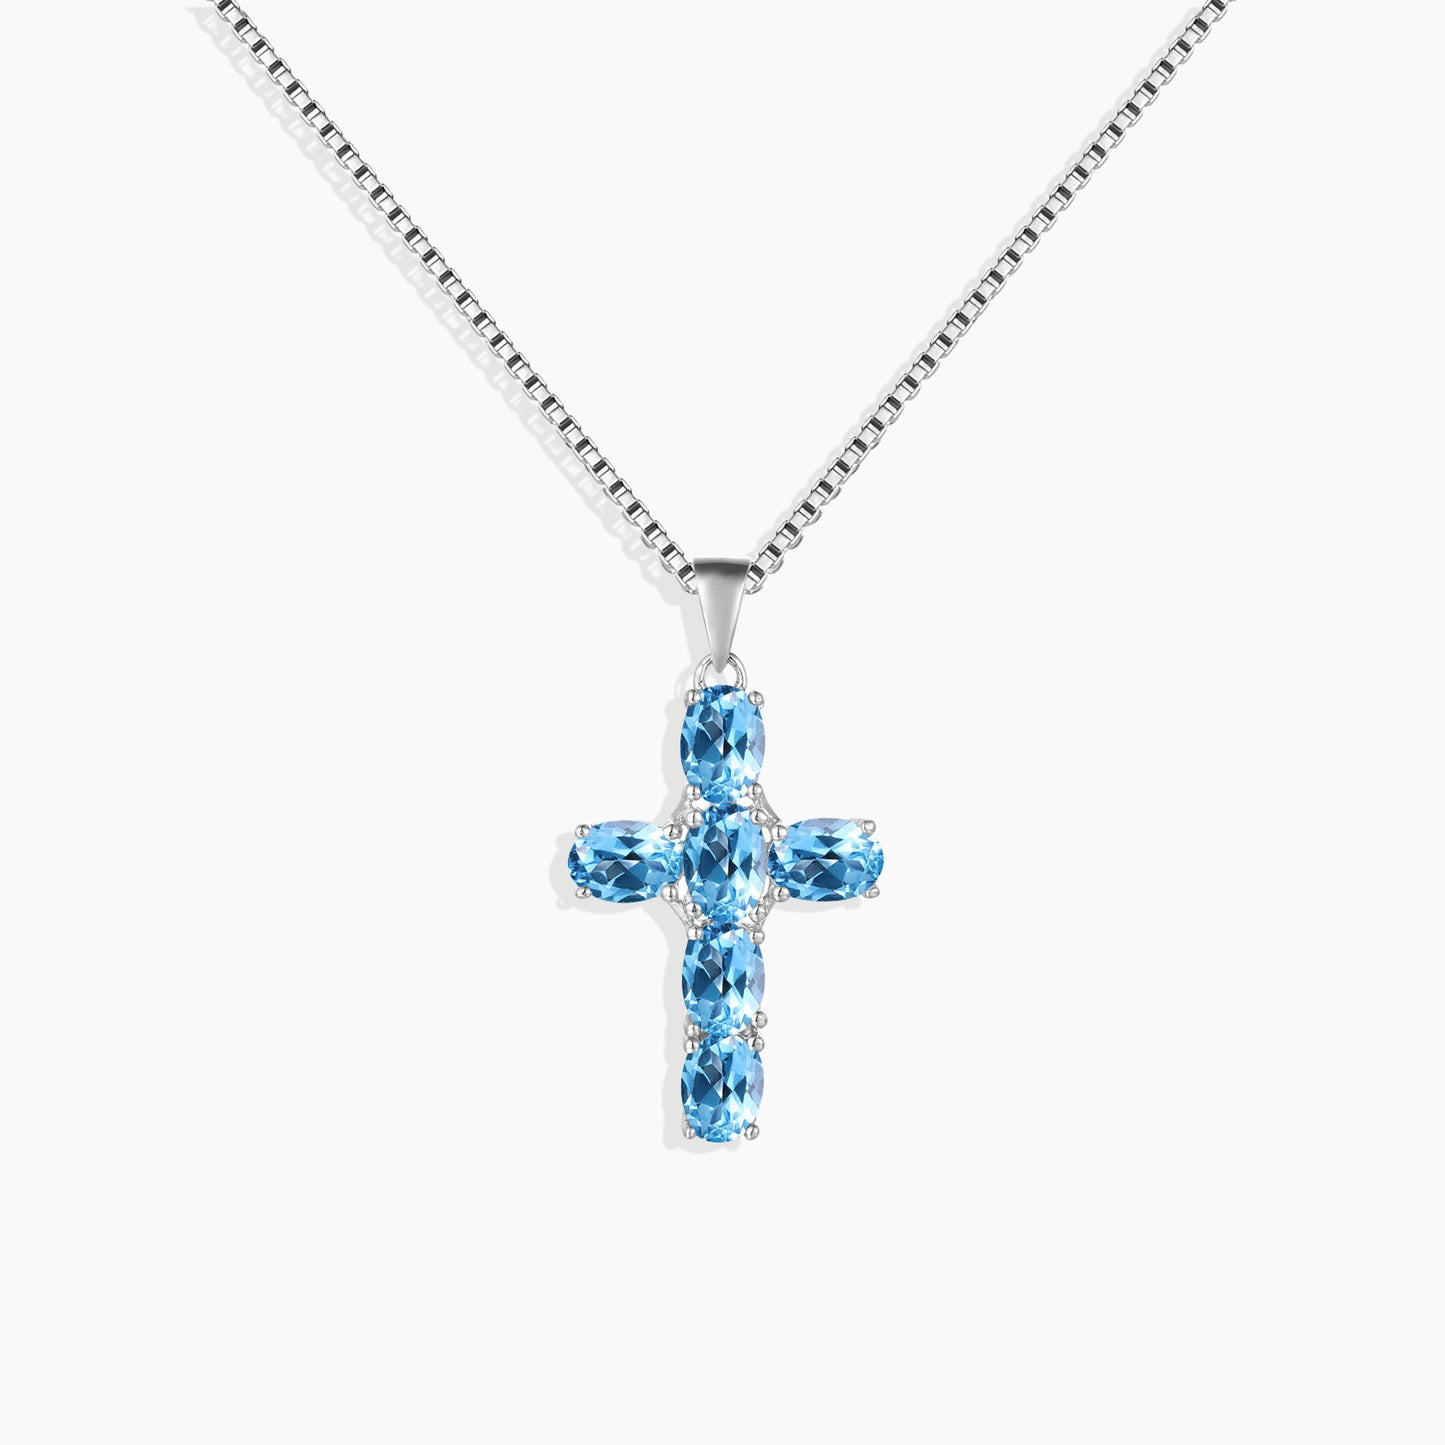 Cross Necklace in Sterling Silver -  Swiss Blue Topaz